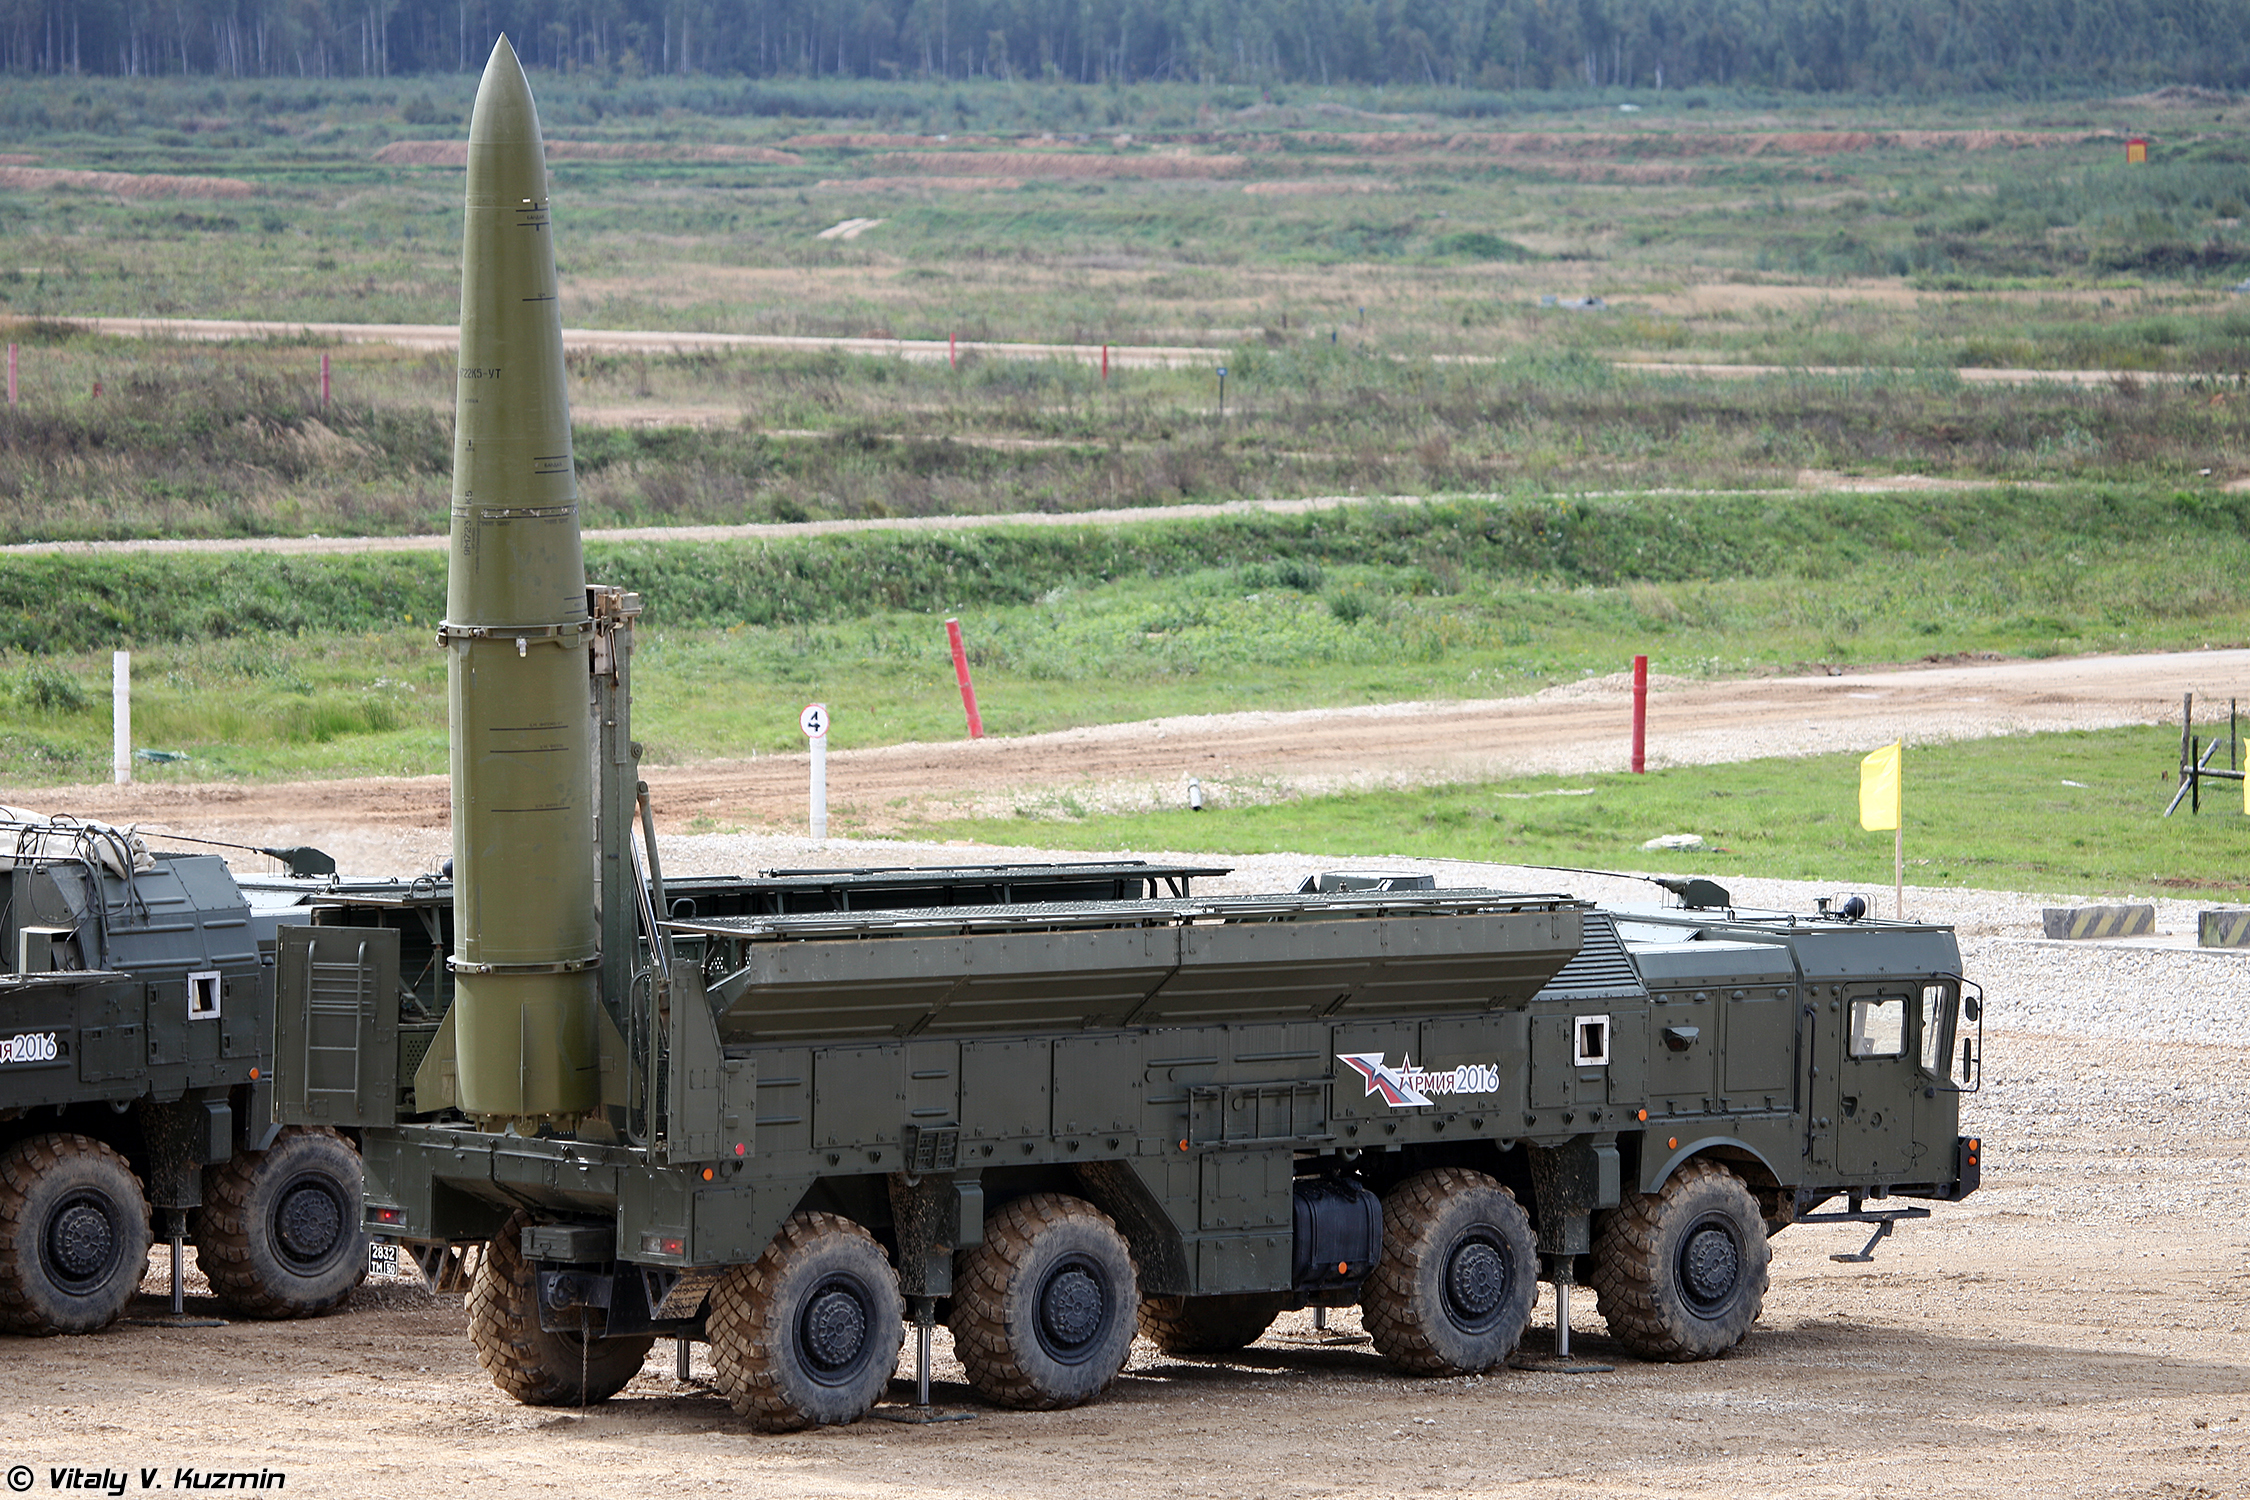 Τα πυραυλικά συστήματα Iskander-M θα παραμείνουν το βασικό όπλο των ρωσικών δυνάμεων